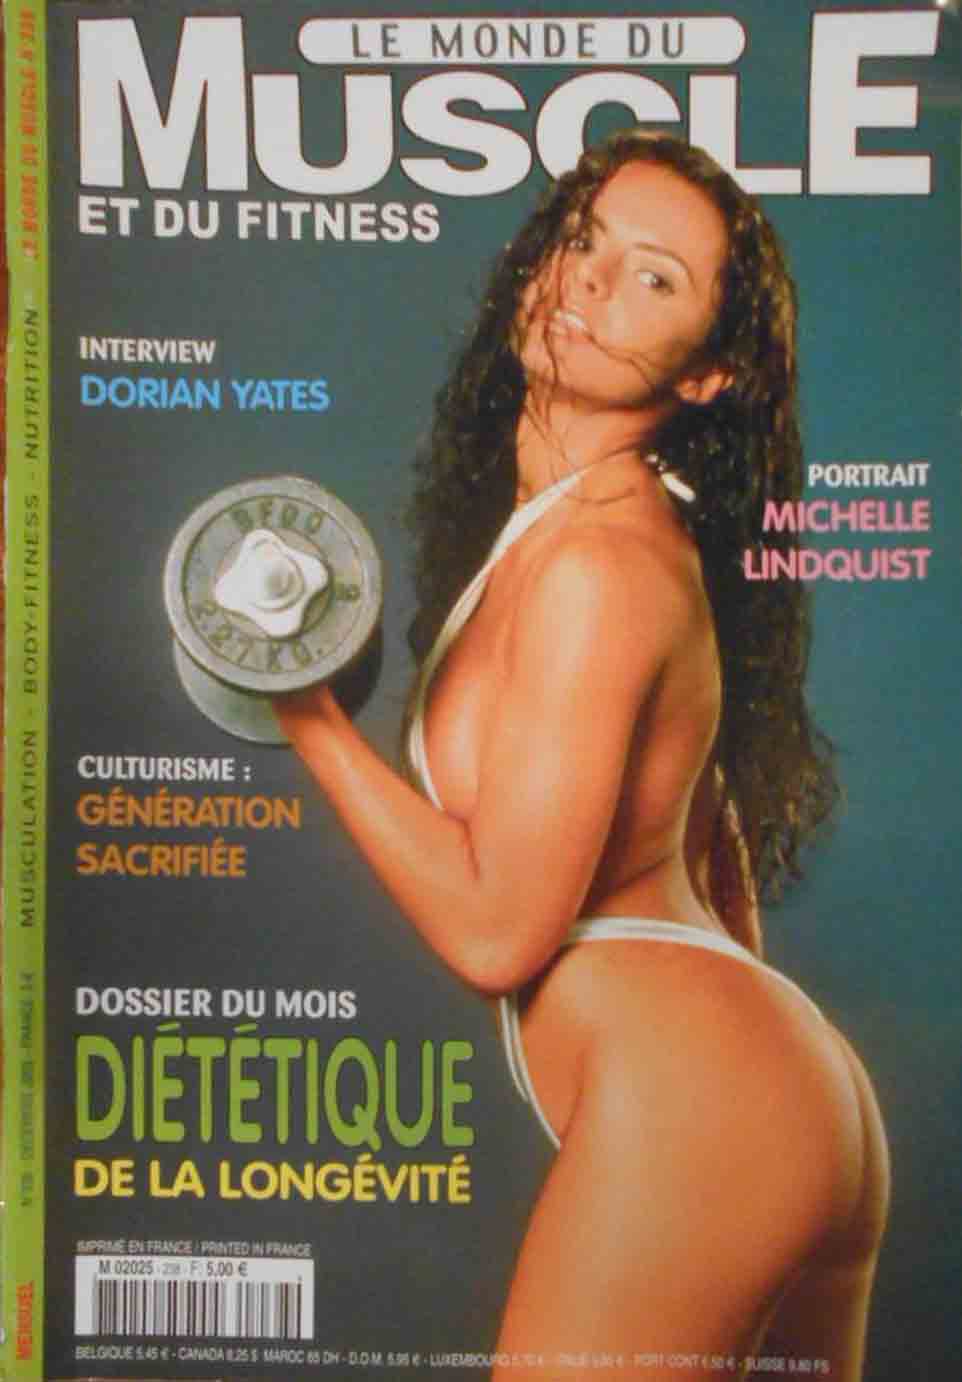 Le Monde du Muscle # 238 magazine back issue Le Monde du Muscle magizine back copy 